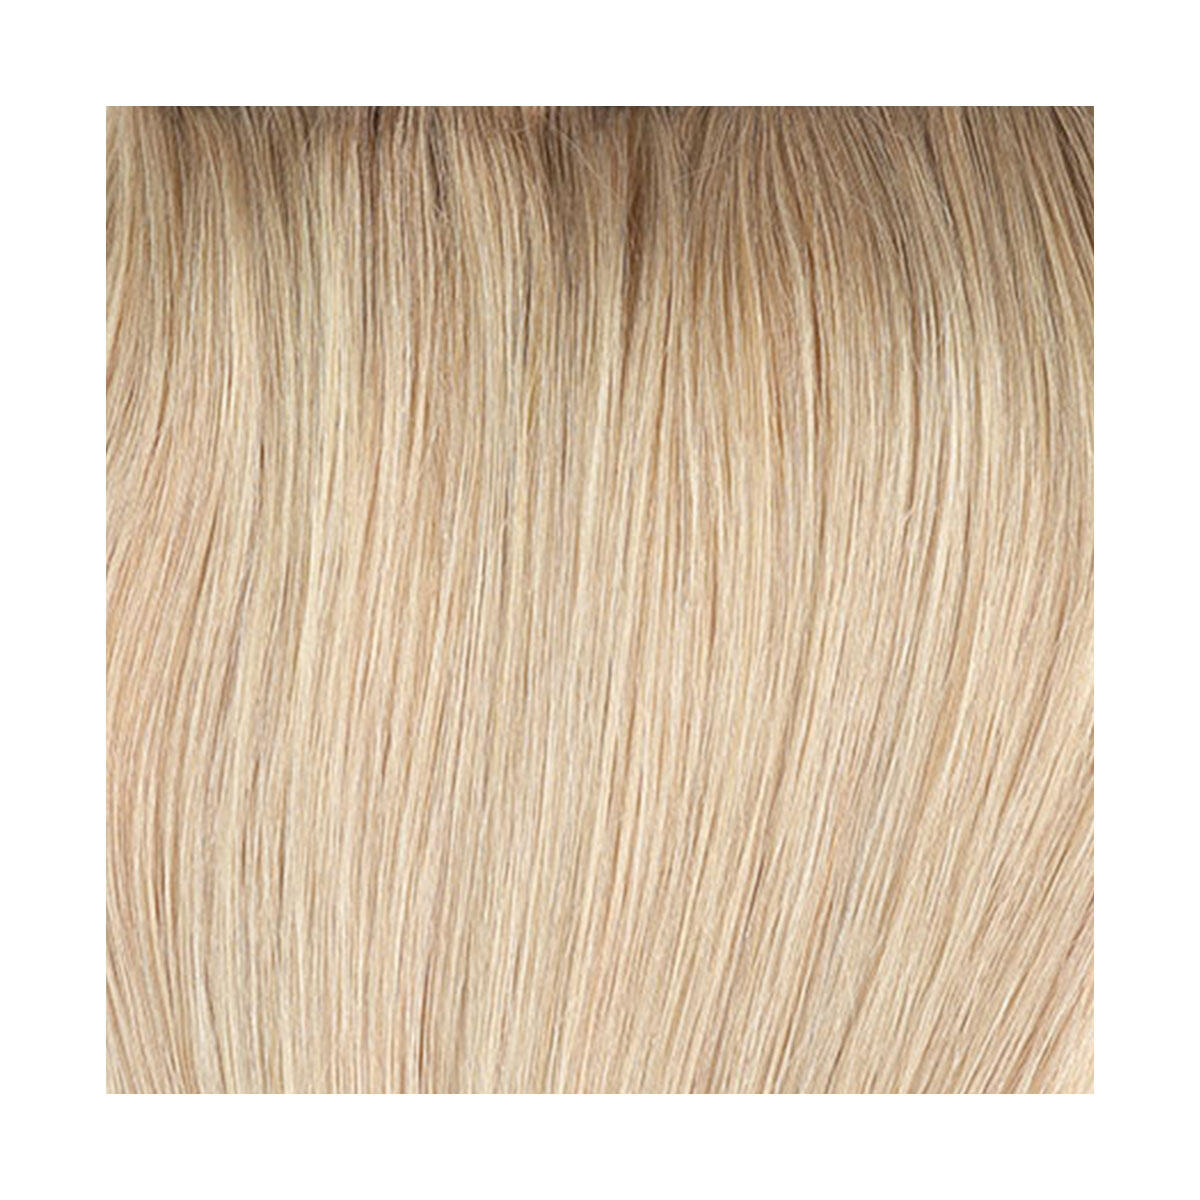 Colour Sample C7.3/8.3 Brilliant Blonde ColorMelt 20 cm